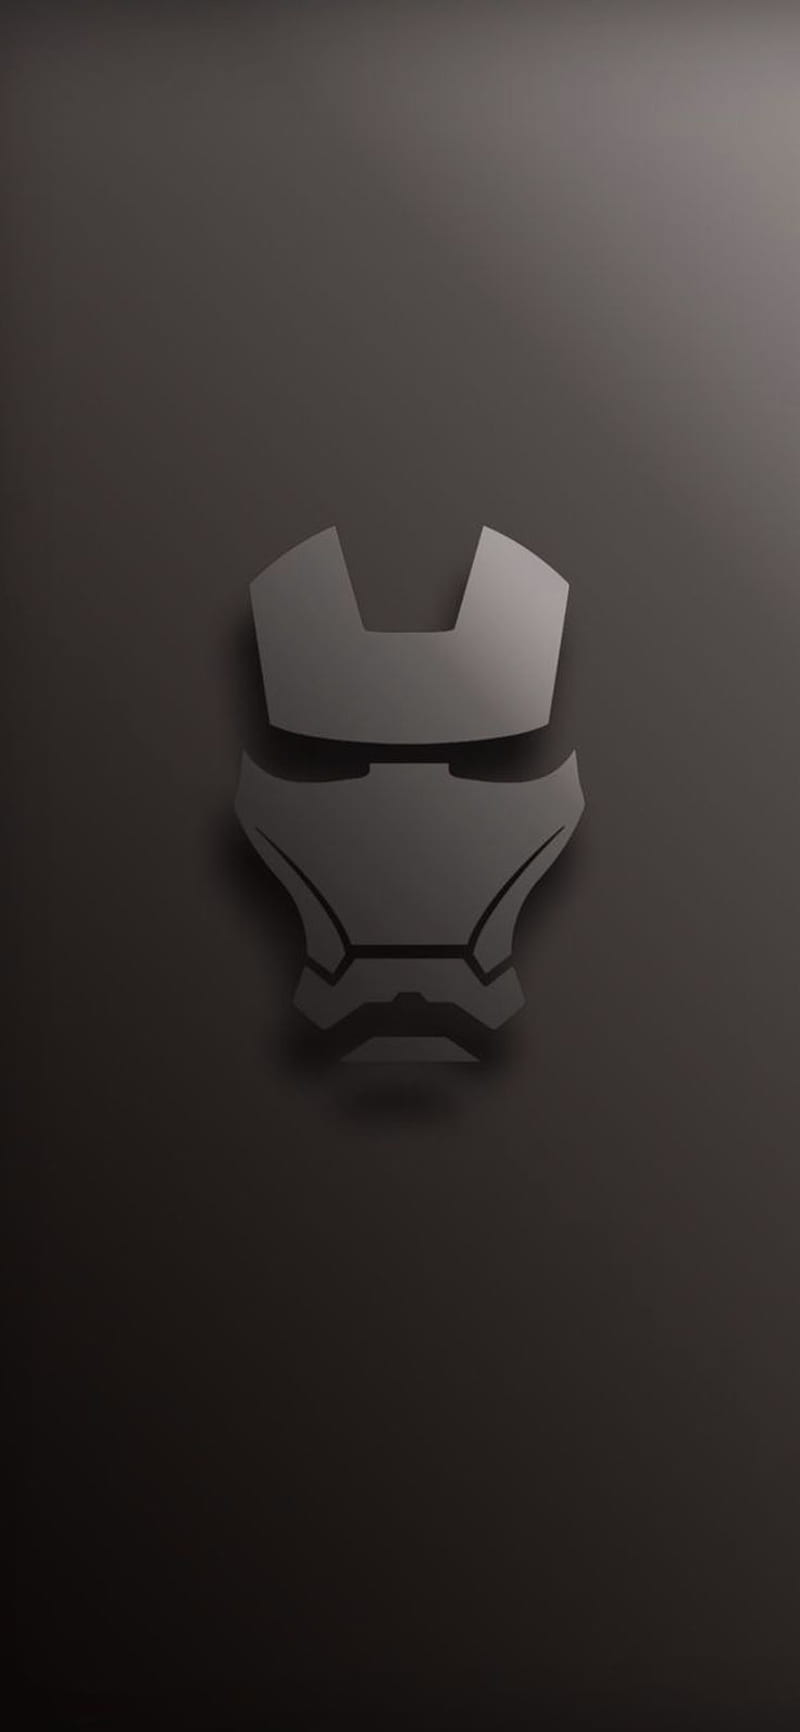 Avengers Endgame  Ironman helmet painting 4K wallpaper download